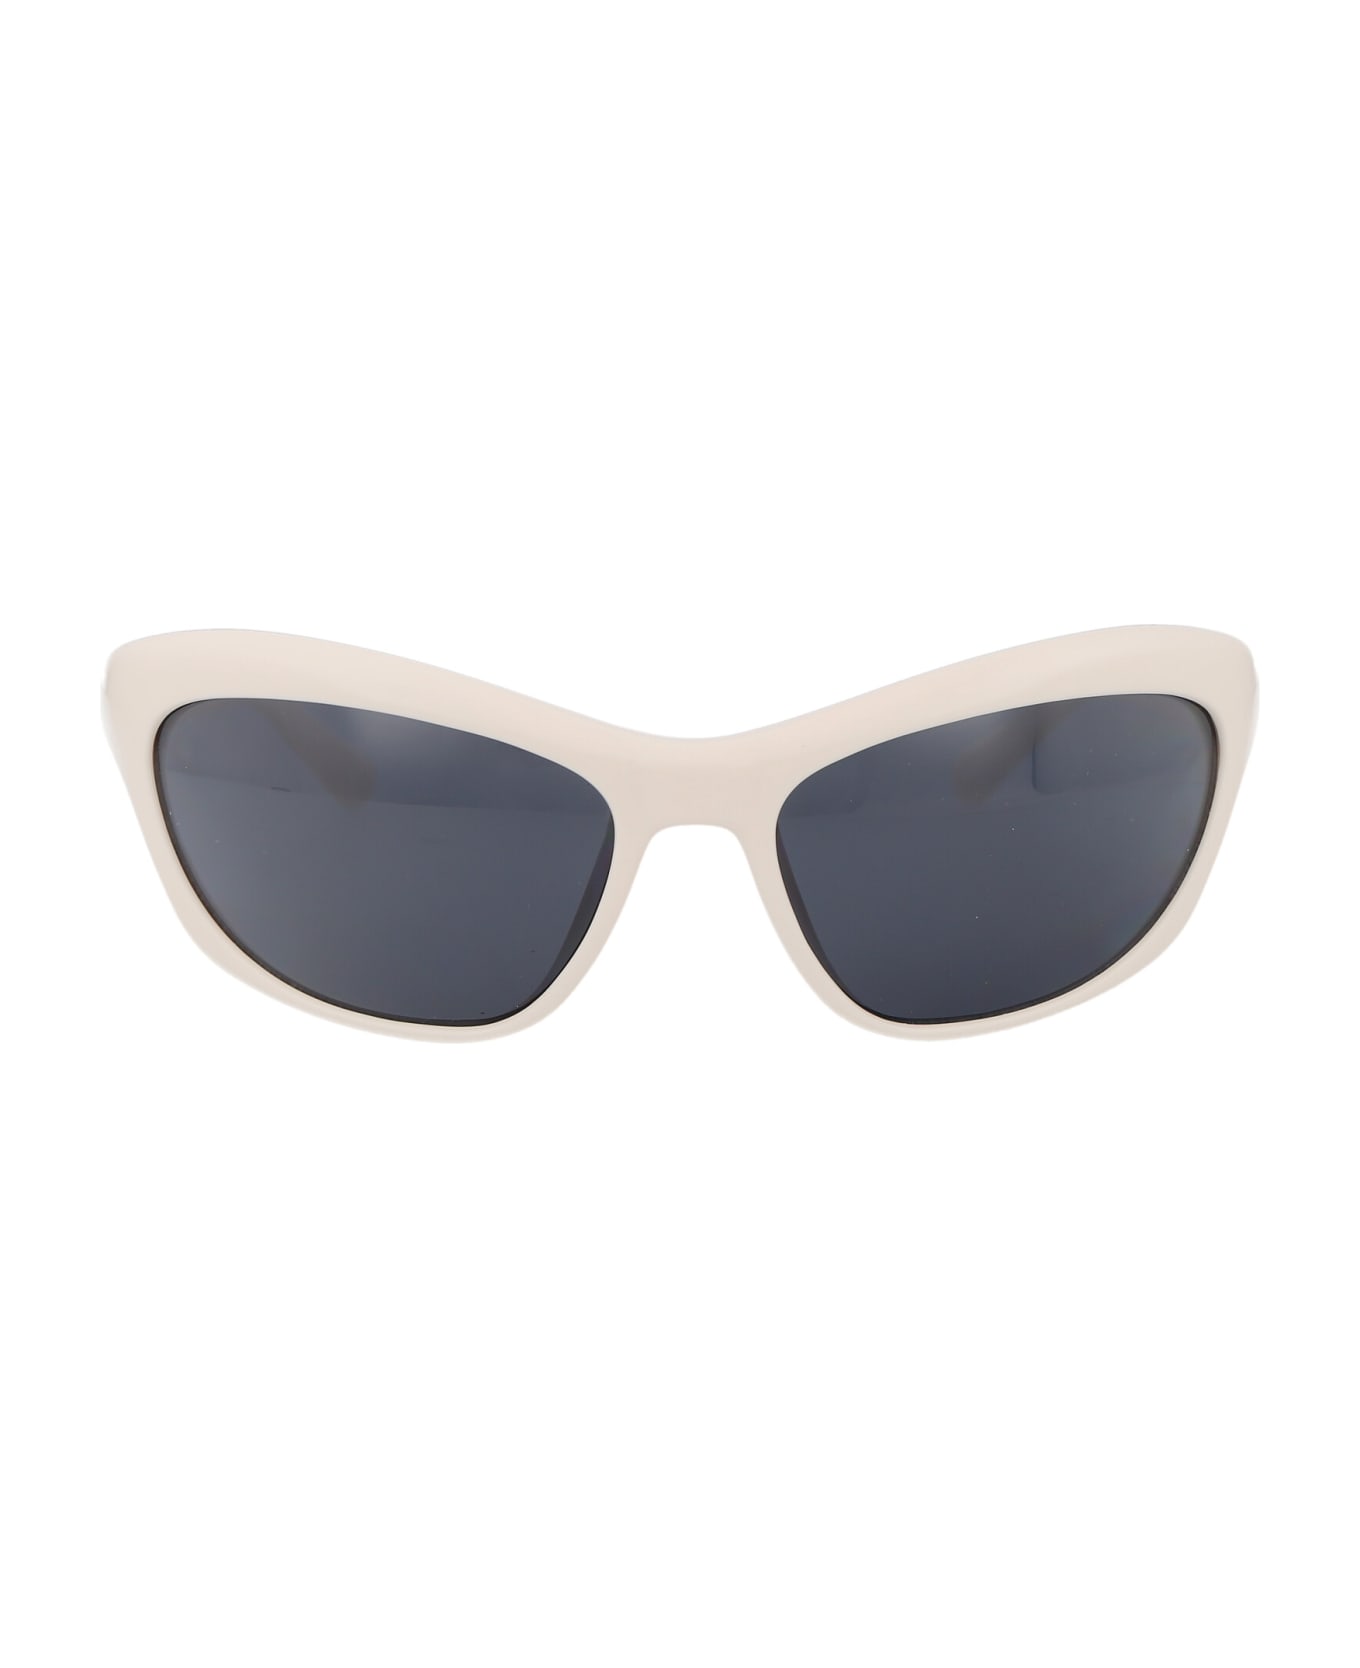 Chiara Ferragni Cf 7030/s Sunglasses - VK6IR WHITE サングラス